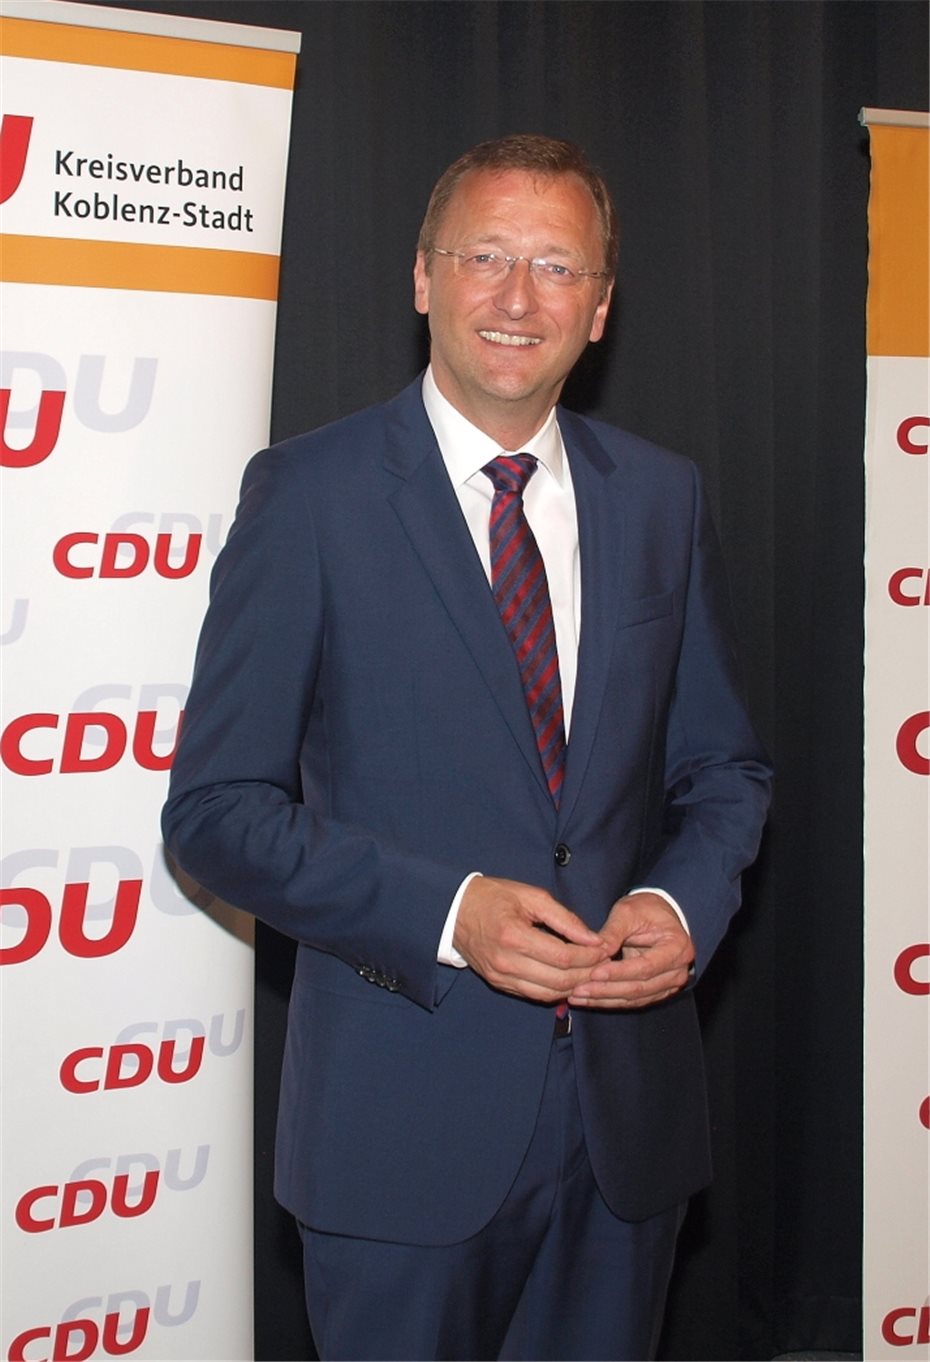 Für die Bundestagswahl 2017
wurde Josef Oster nominiert